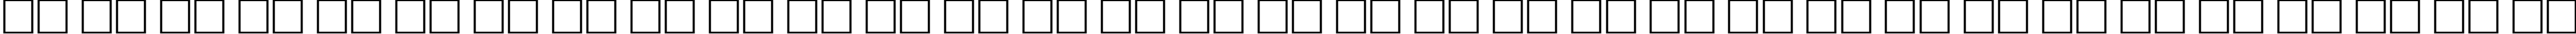 Пример написания русского алфавита шрифтом KarinaC